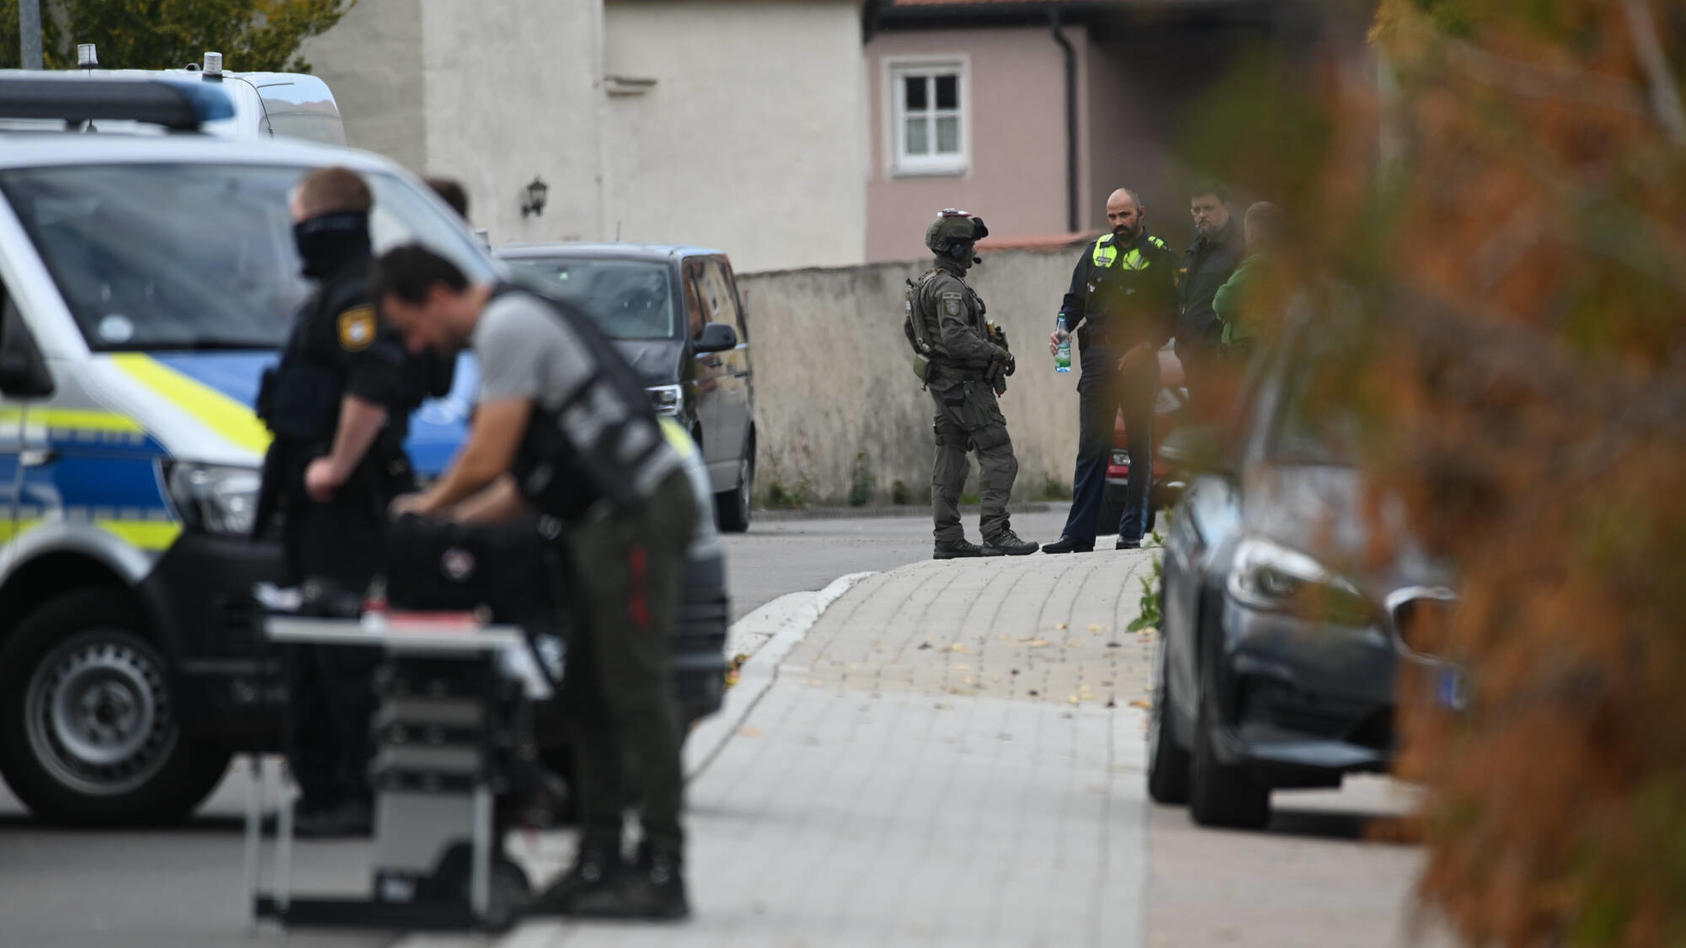  Tötungsdelikt in Bayern, 10.10.2022, Bayern, Weiltingen: Einsatzkräfte, darunter SEK-Beamte, stehen nach einem Tötungsdelikt im Markt Weiltingen im Landkreis Ansbach. Ein Mann hatte aus einem Auto einen anderen Mann durch eine Schusswaffe tödlich ve